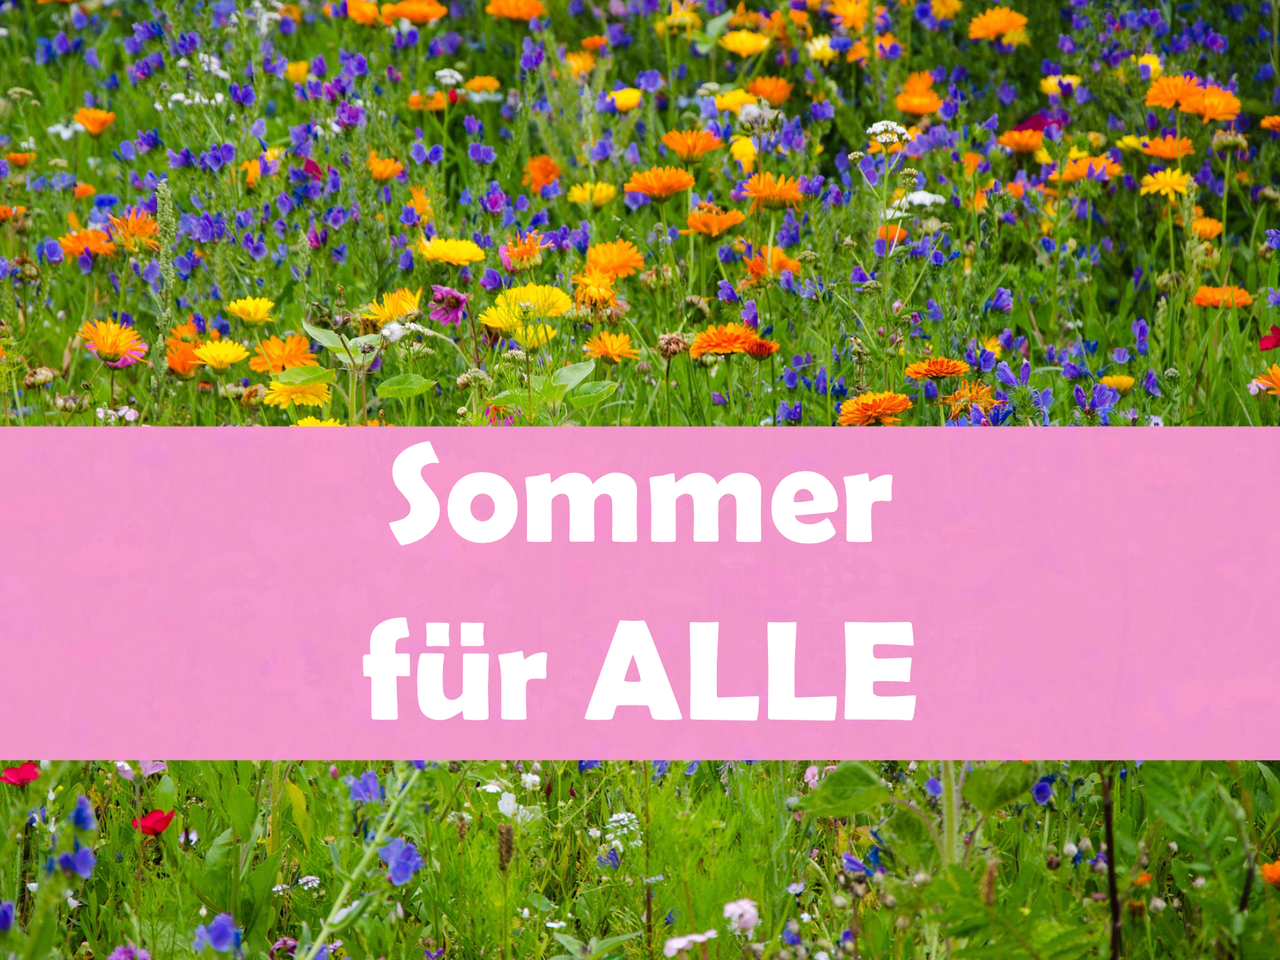 Das Bild zeigt den Schriftzug "Sommer für alle" vor einer bunten Sommerblumenwiese